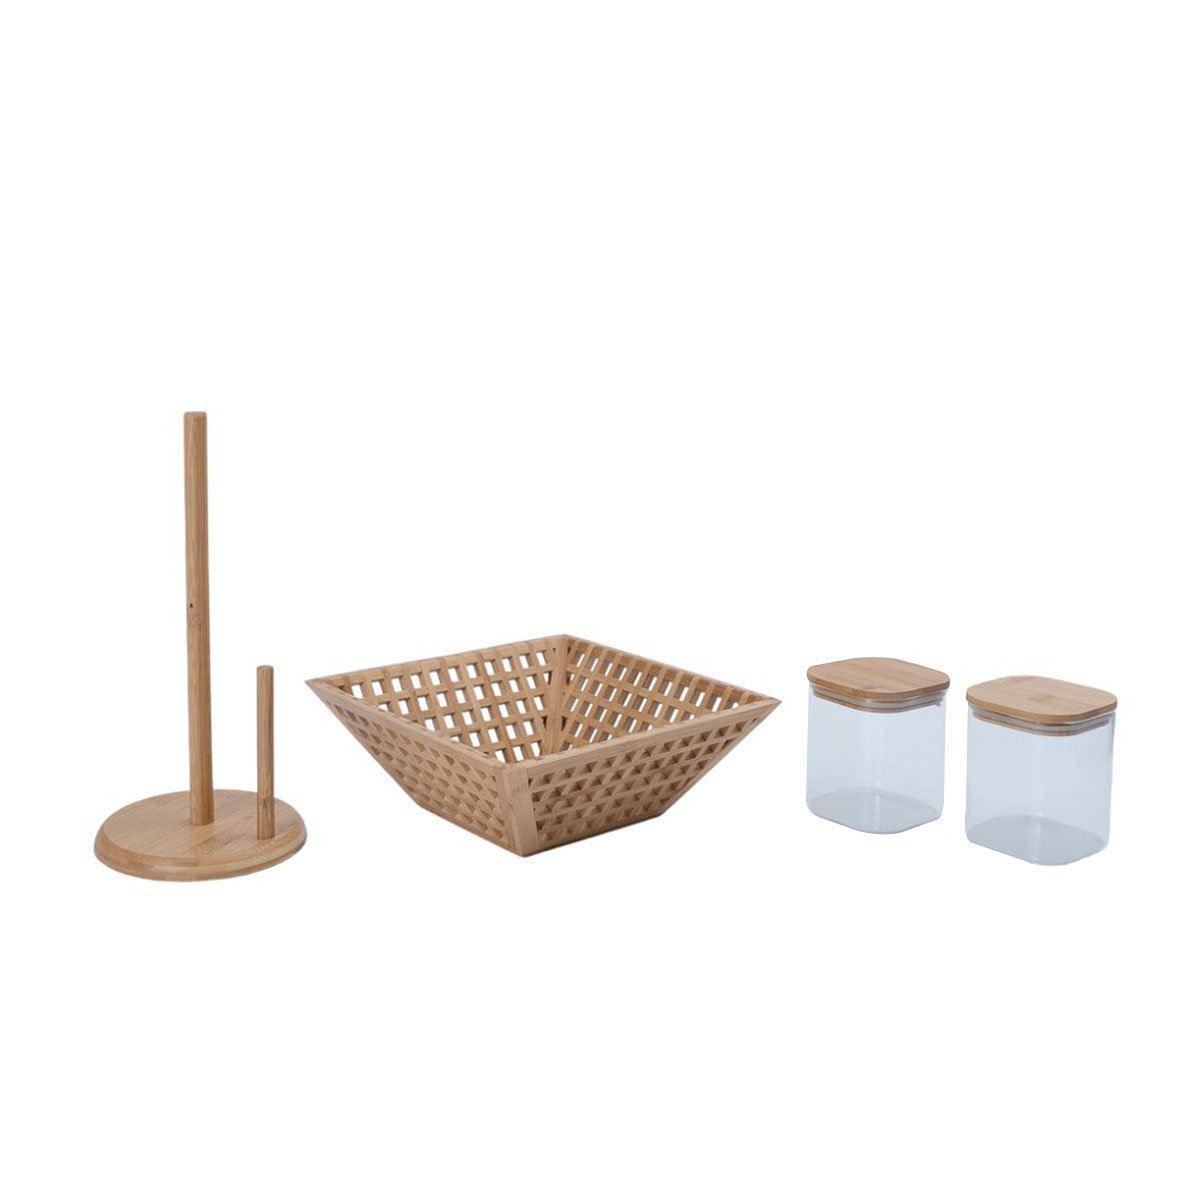 Kit com 2 potes de vidro com tampa de bambu 800ml, fruteira vazada de bambu e porta papel toalha de - 1